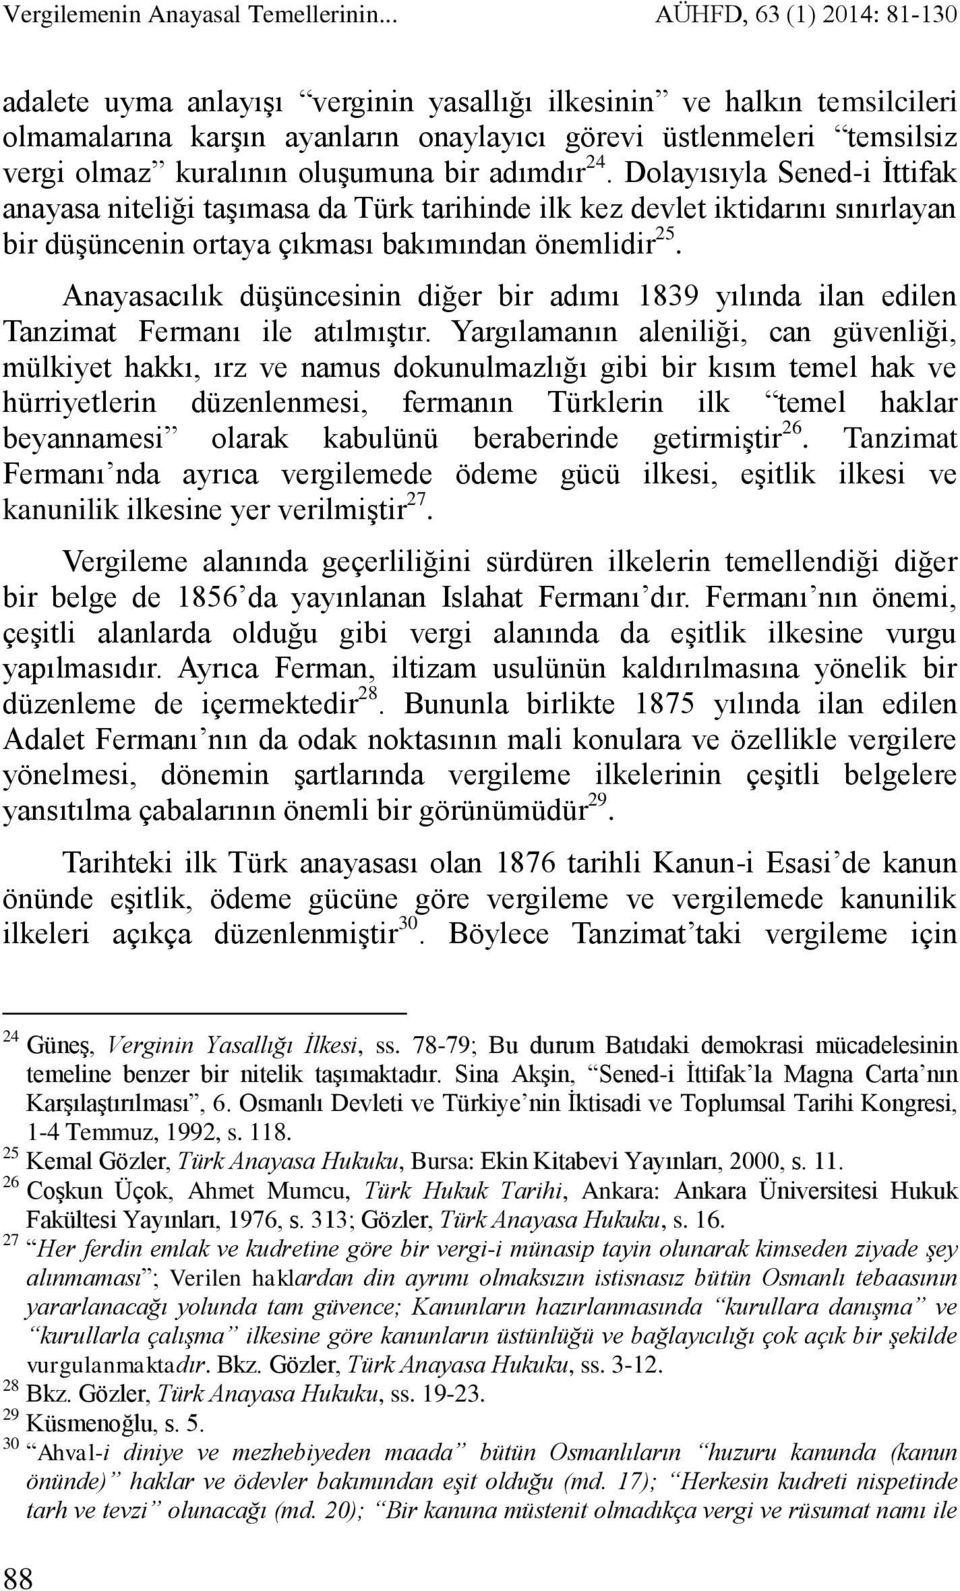 oluşumuna bir adımdır 24. Dolayısıyla Sened-i İttifak anayasa niteliği taşımasa da Türk tarihinde ilk kez devlet iktidarını sınırlayan bir düşüncenin ortaya çıkması bakımından önemlidir 25.